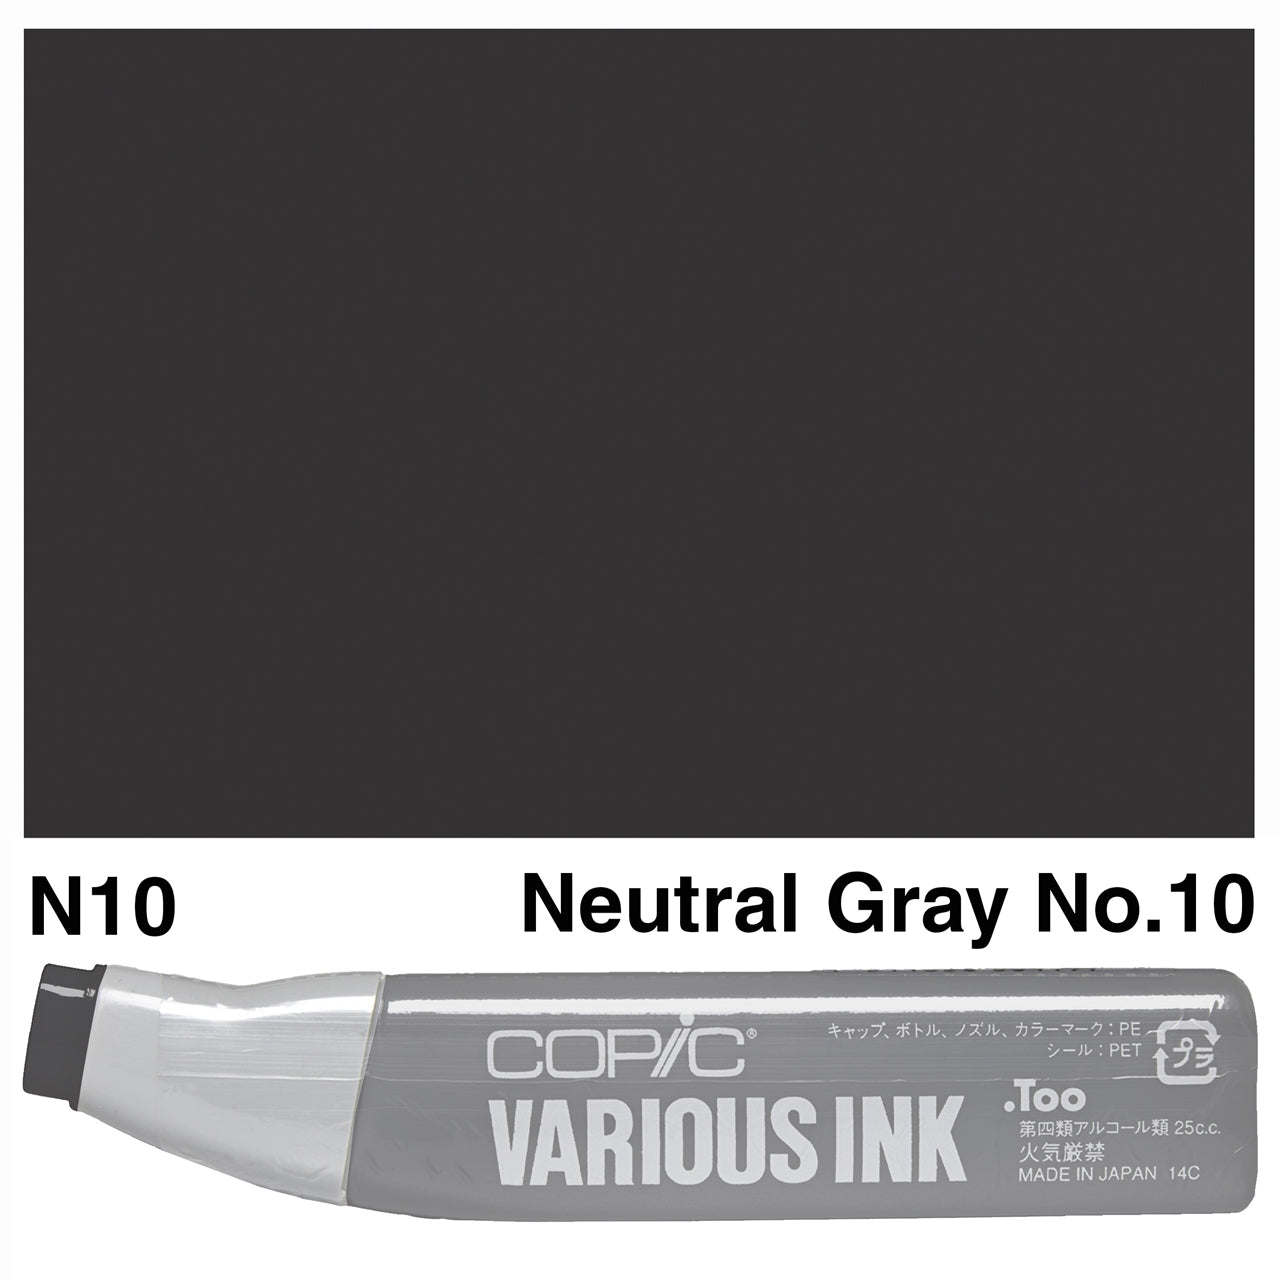 Copic Various Ink N10 Neutral Gray No.10 - theartshop.com.au